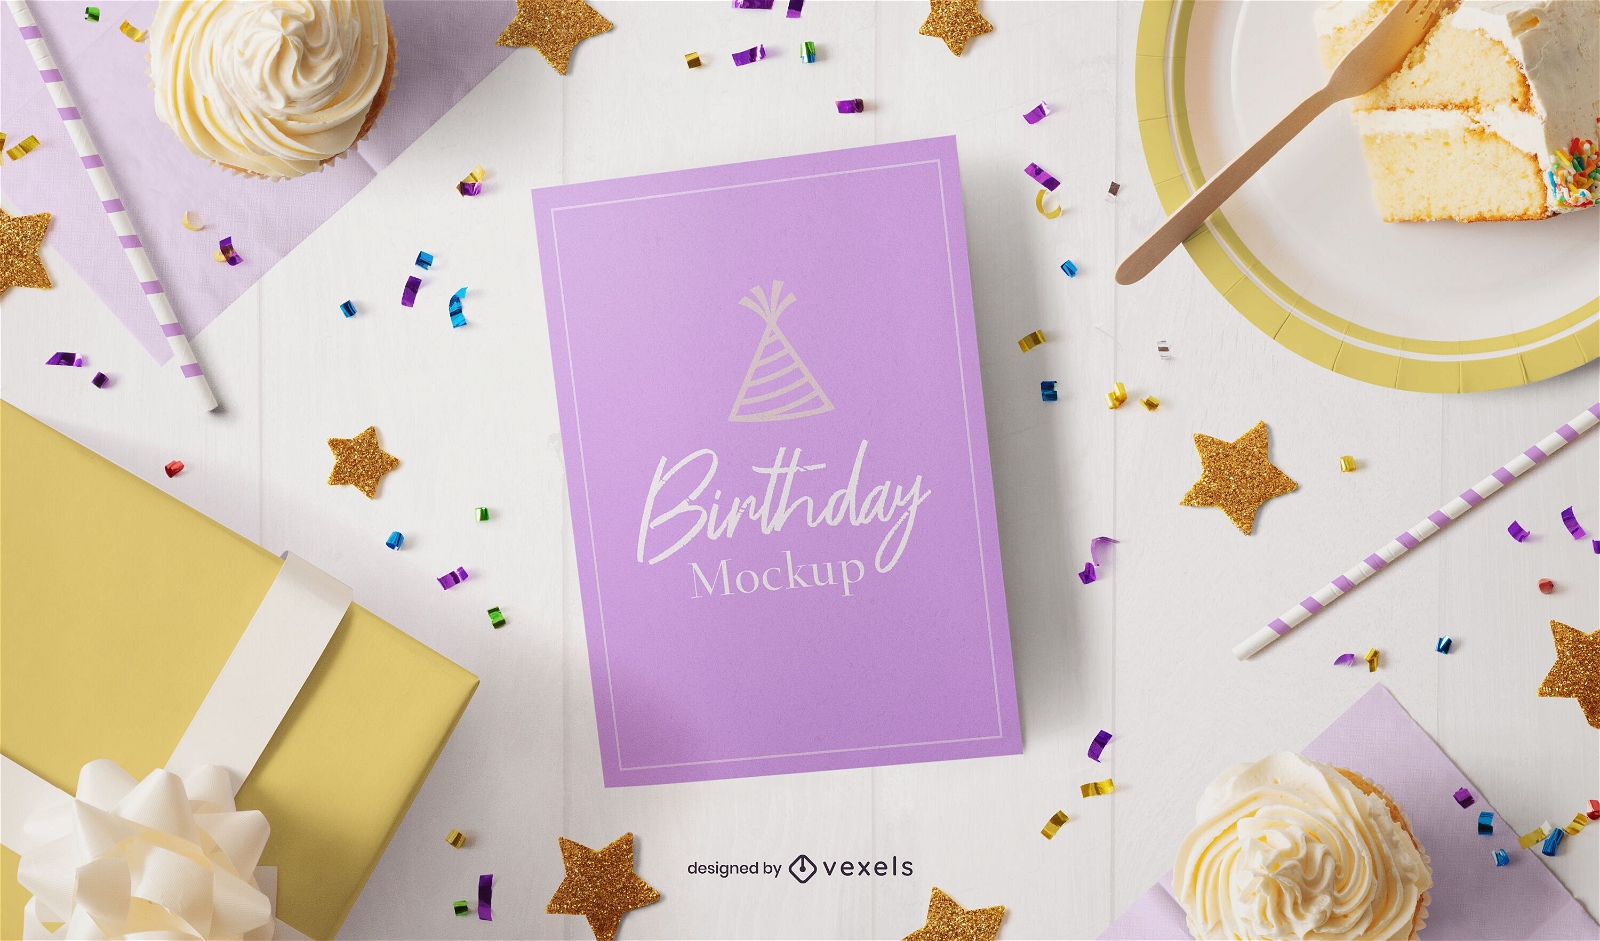 Composición de maqueta de tarjeta de felicitación de cumpleaños